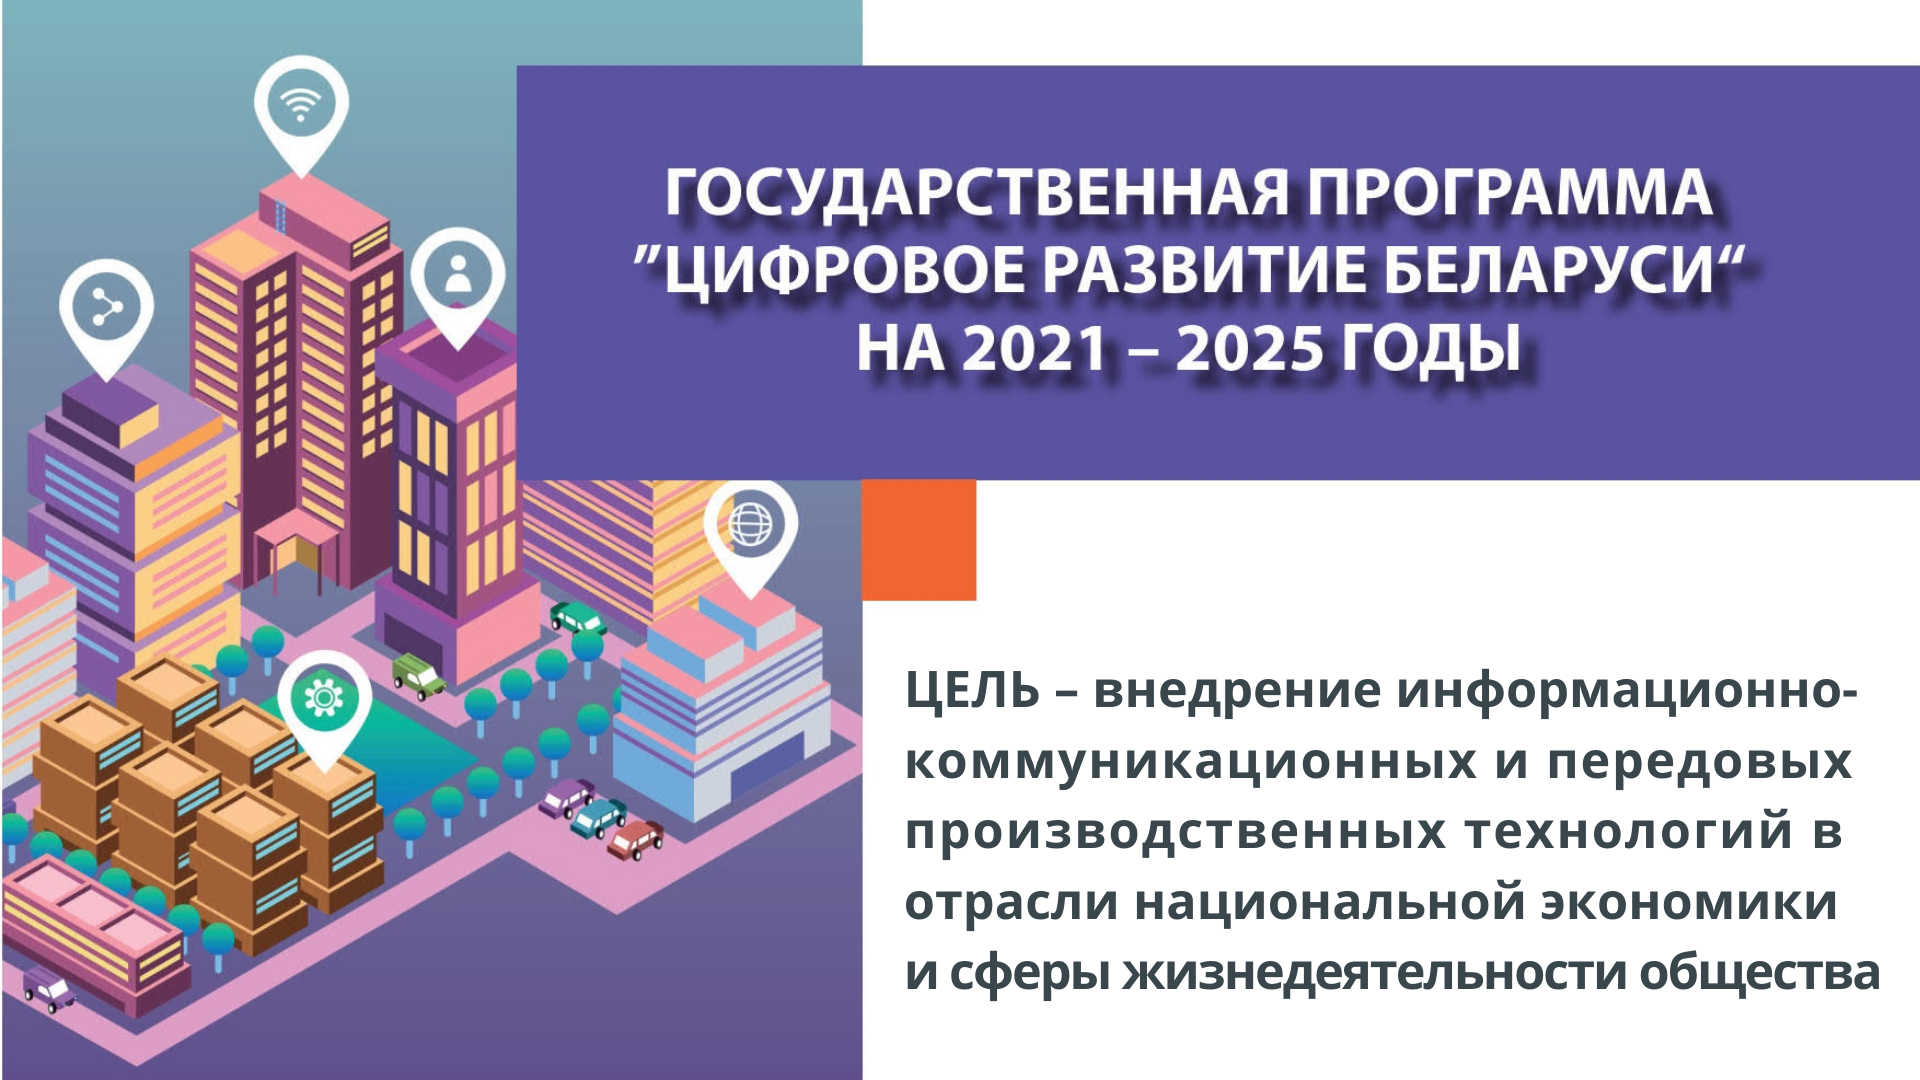 2025 год юбилейный. Государственные программы. Цифровое развитие Беларуси. Программа инновационного развития. Государственной программы «цифровое развитие Беларуси» на 2021–2025 гг..